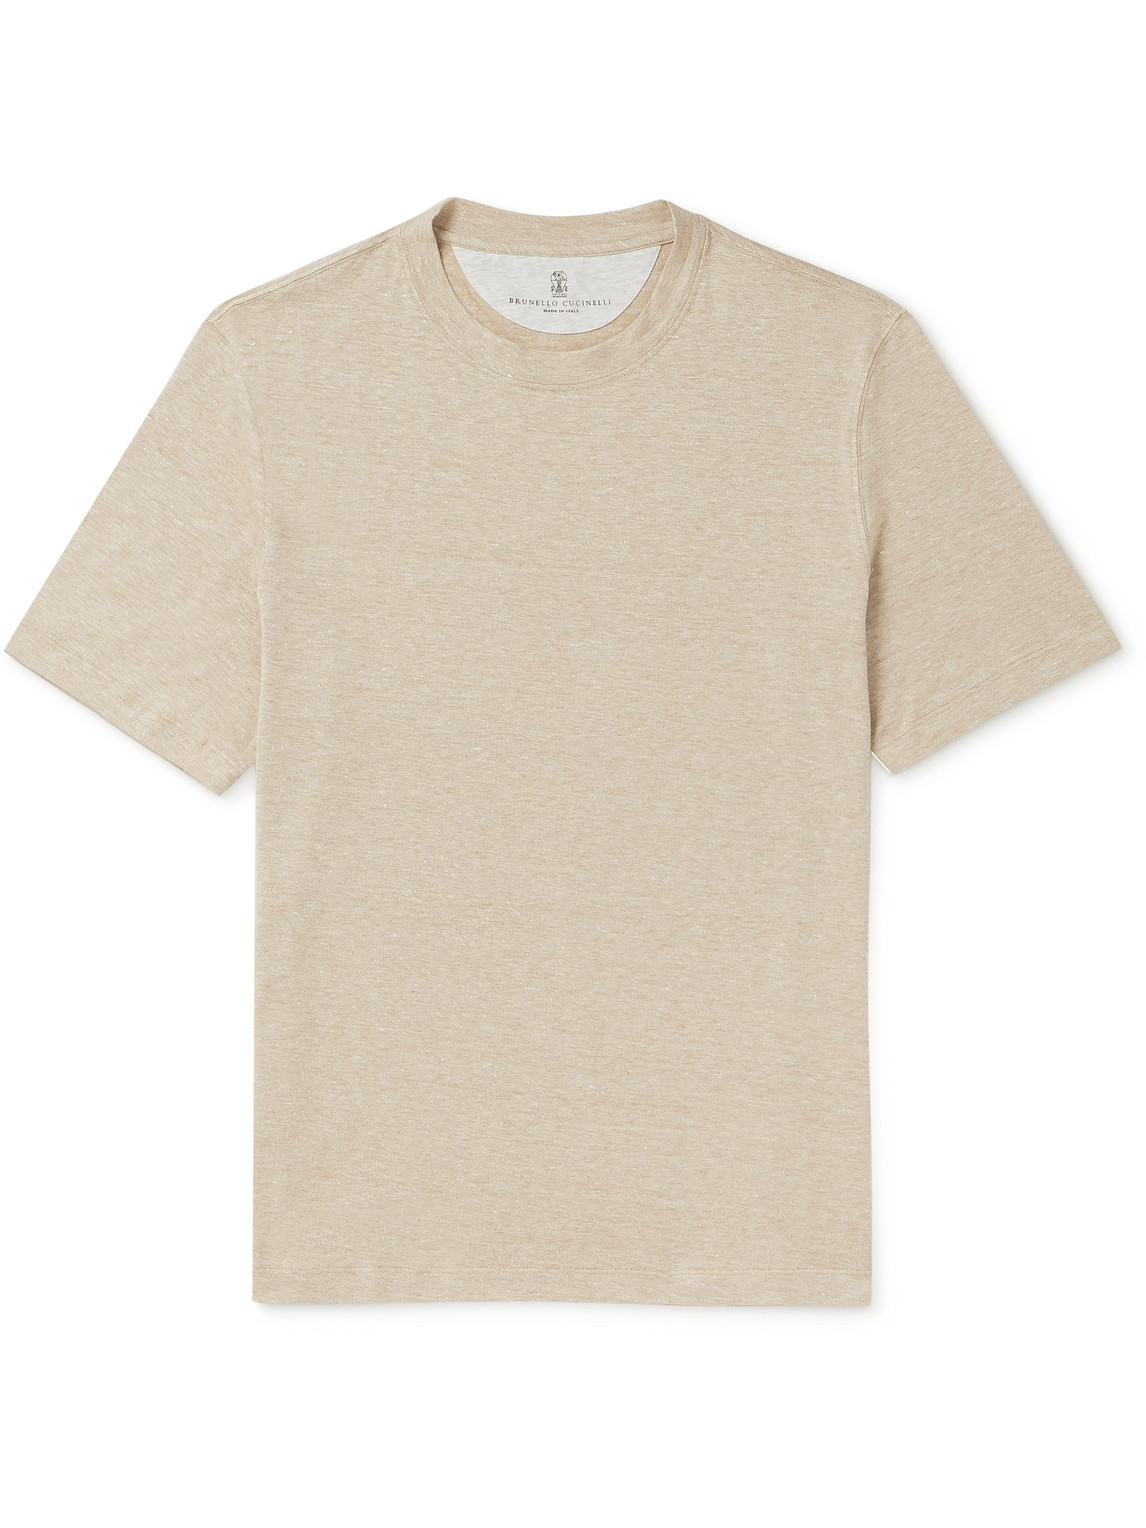 Brunello Cucinelli - Slub Linen and Cotton-Blend Jersey T-Shirt - Men - Neutrals - S von Brunello Cucinelli